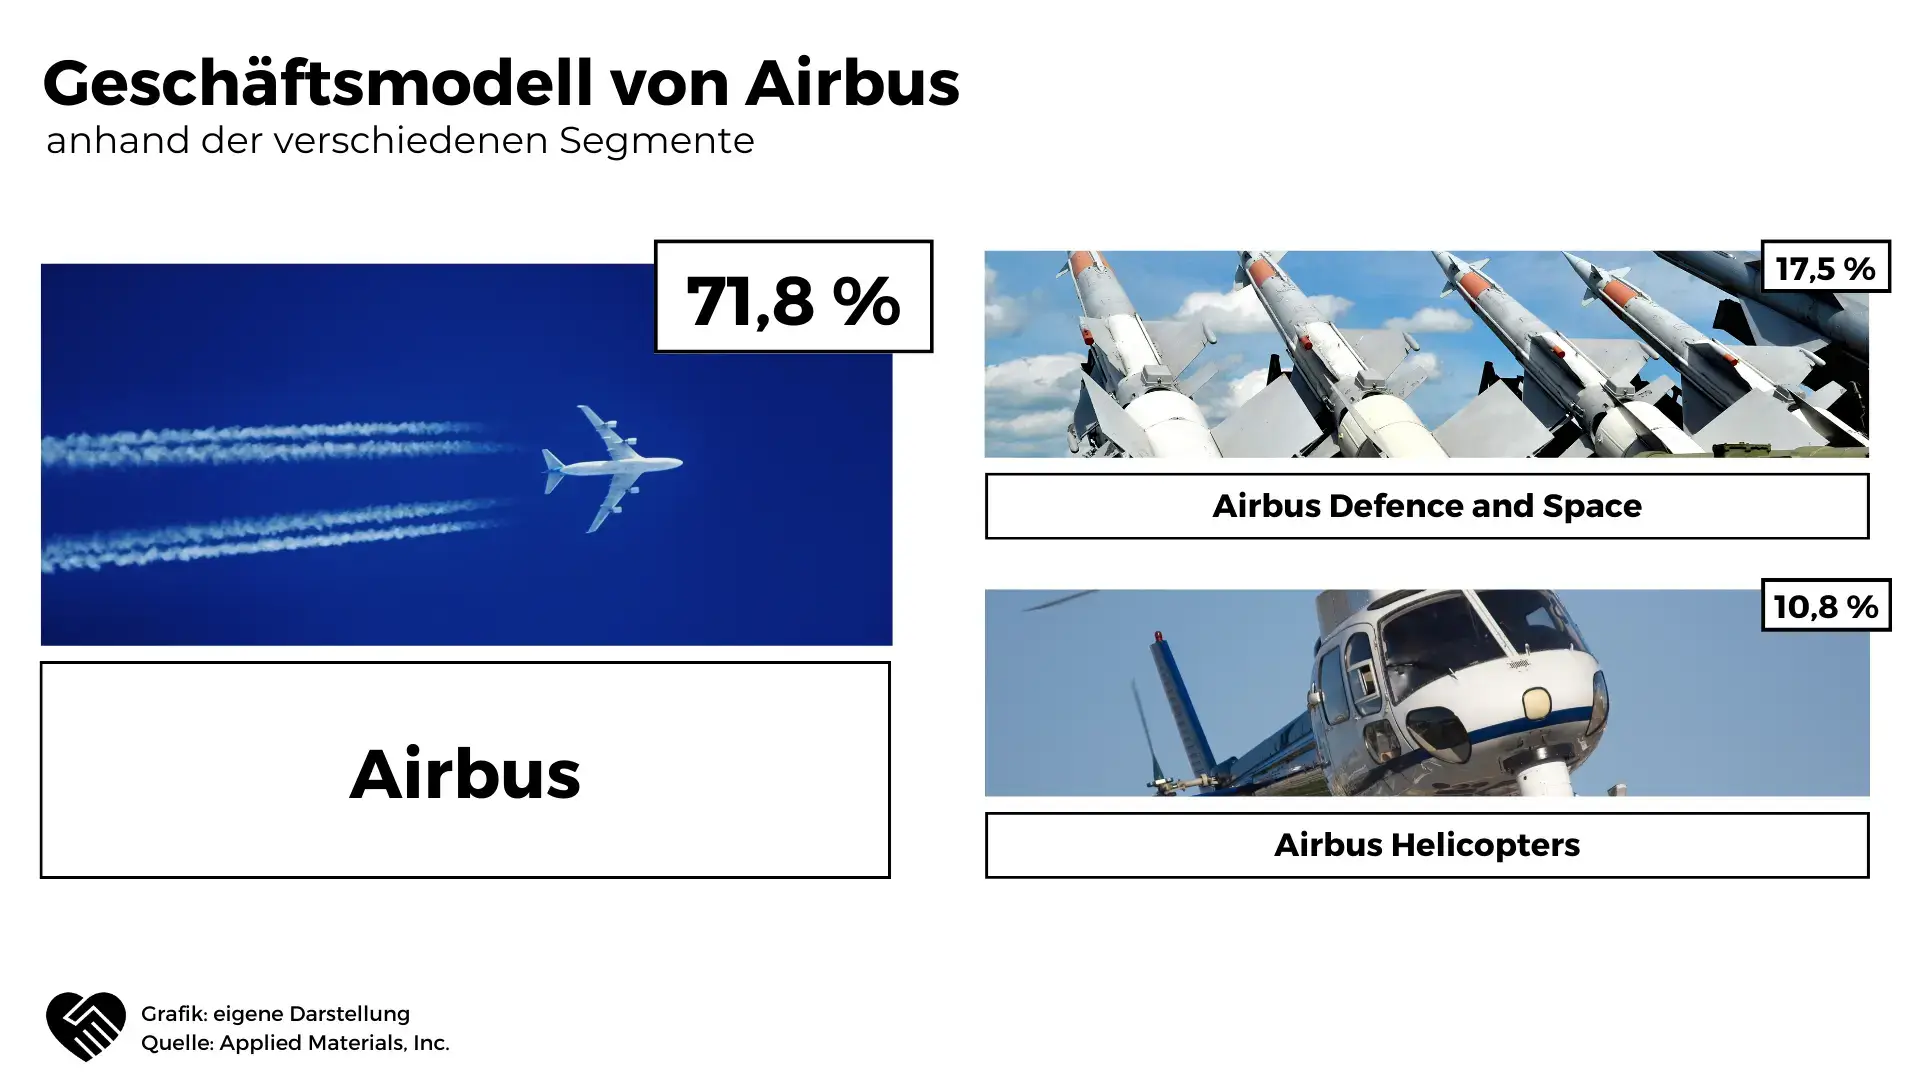 Airbus Aktie Geschäftsmodell in Zahlen